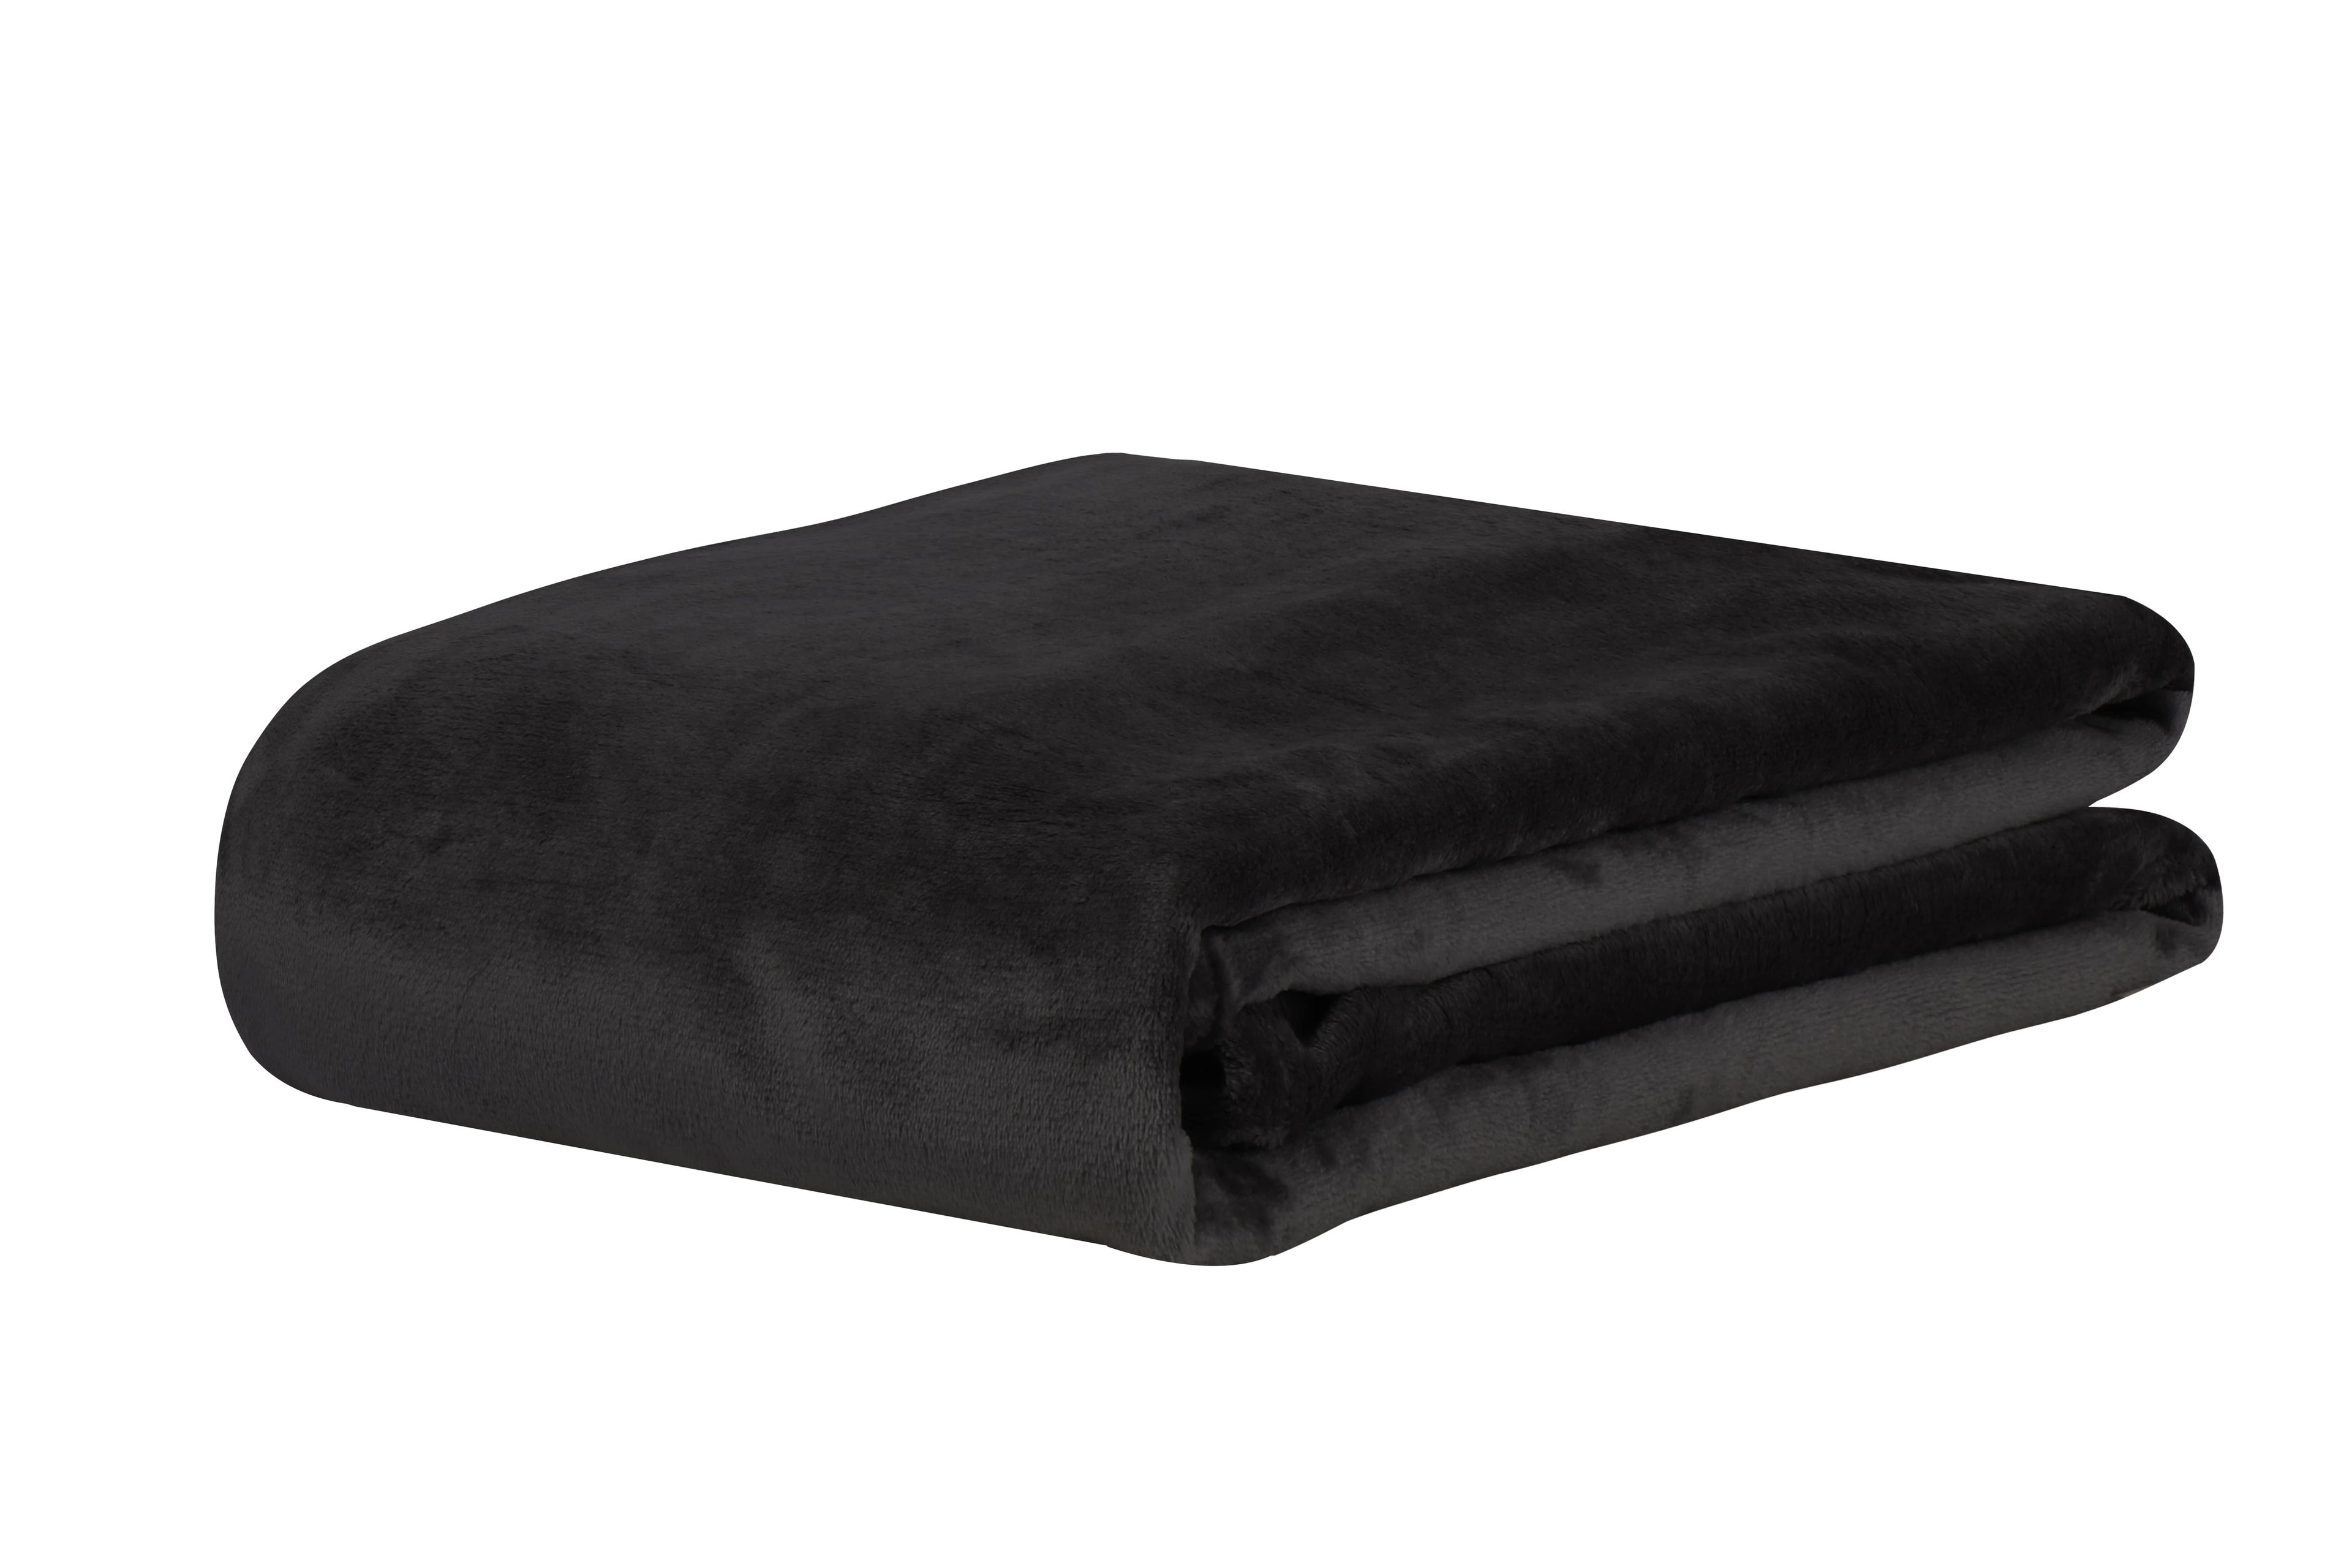 Cobertor Manta Super Soft Casal 2,20x1,80 300G/M² Premium:Preto/Liso